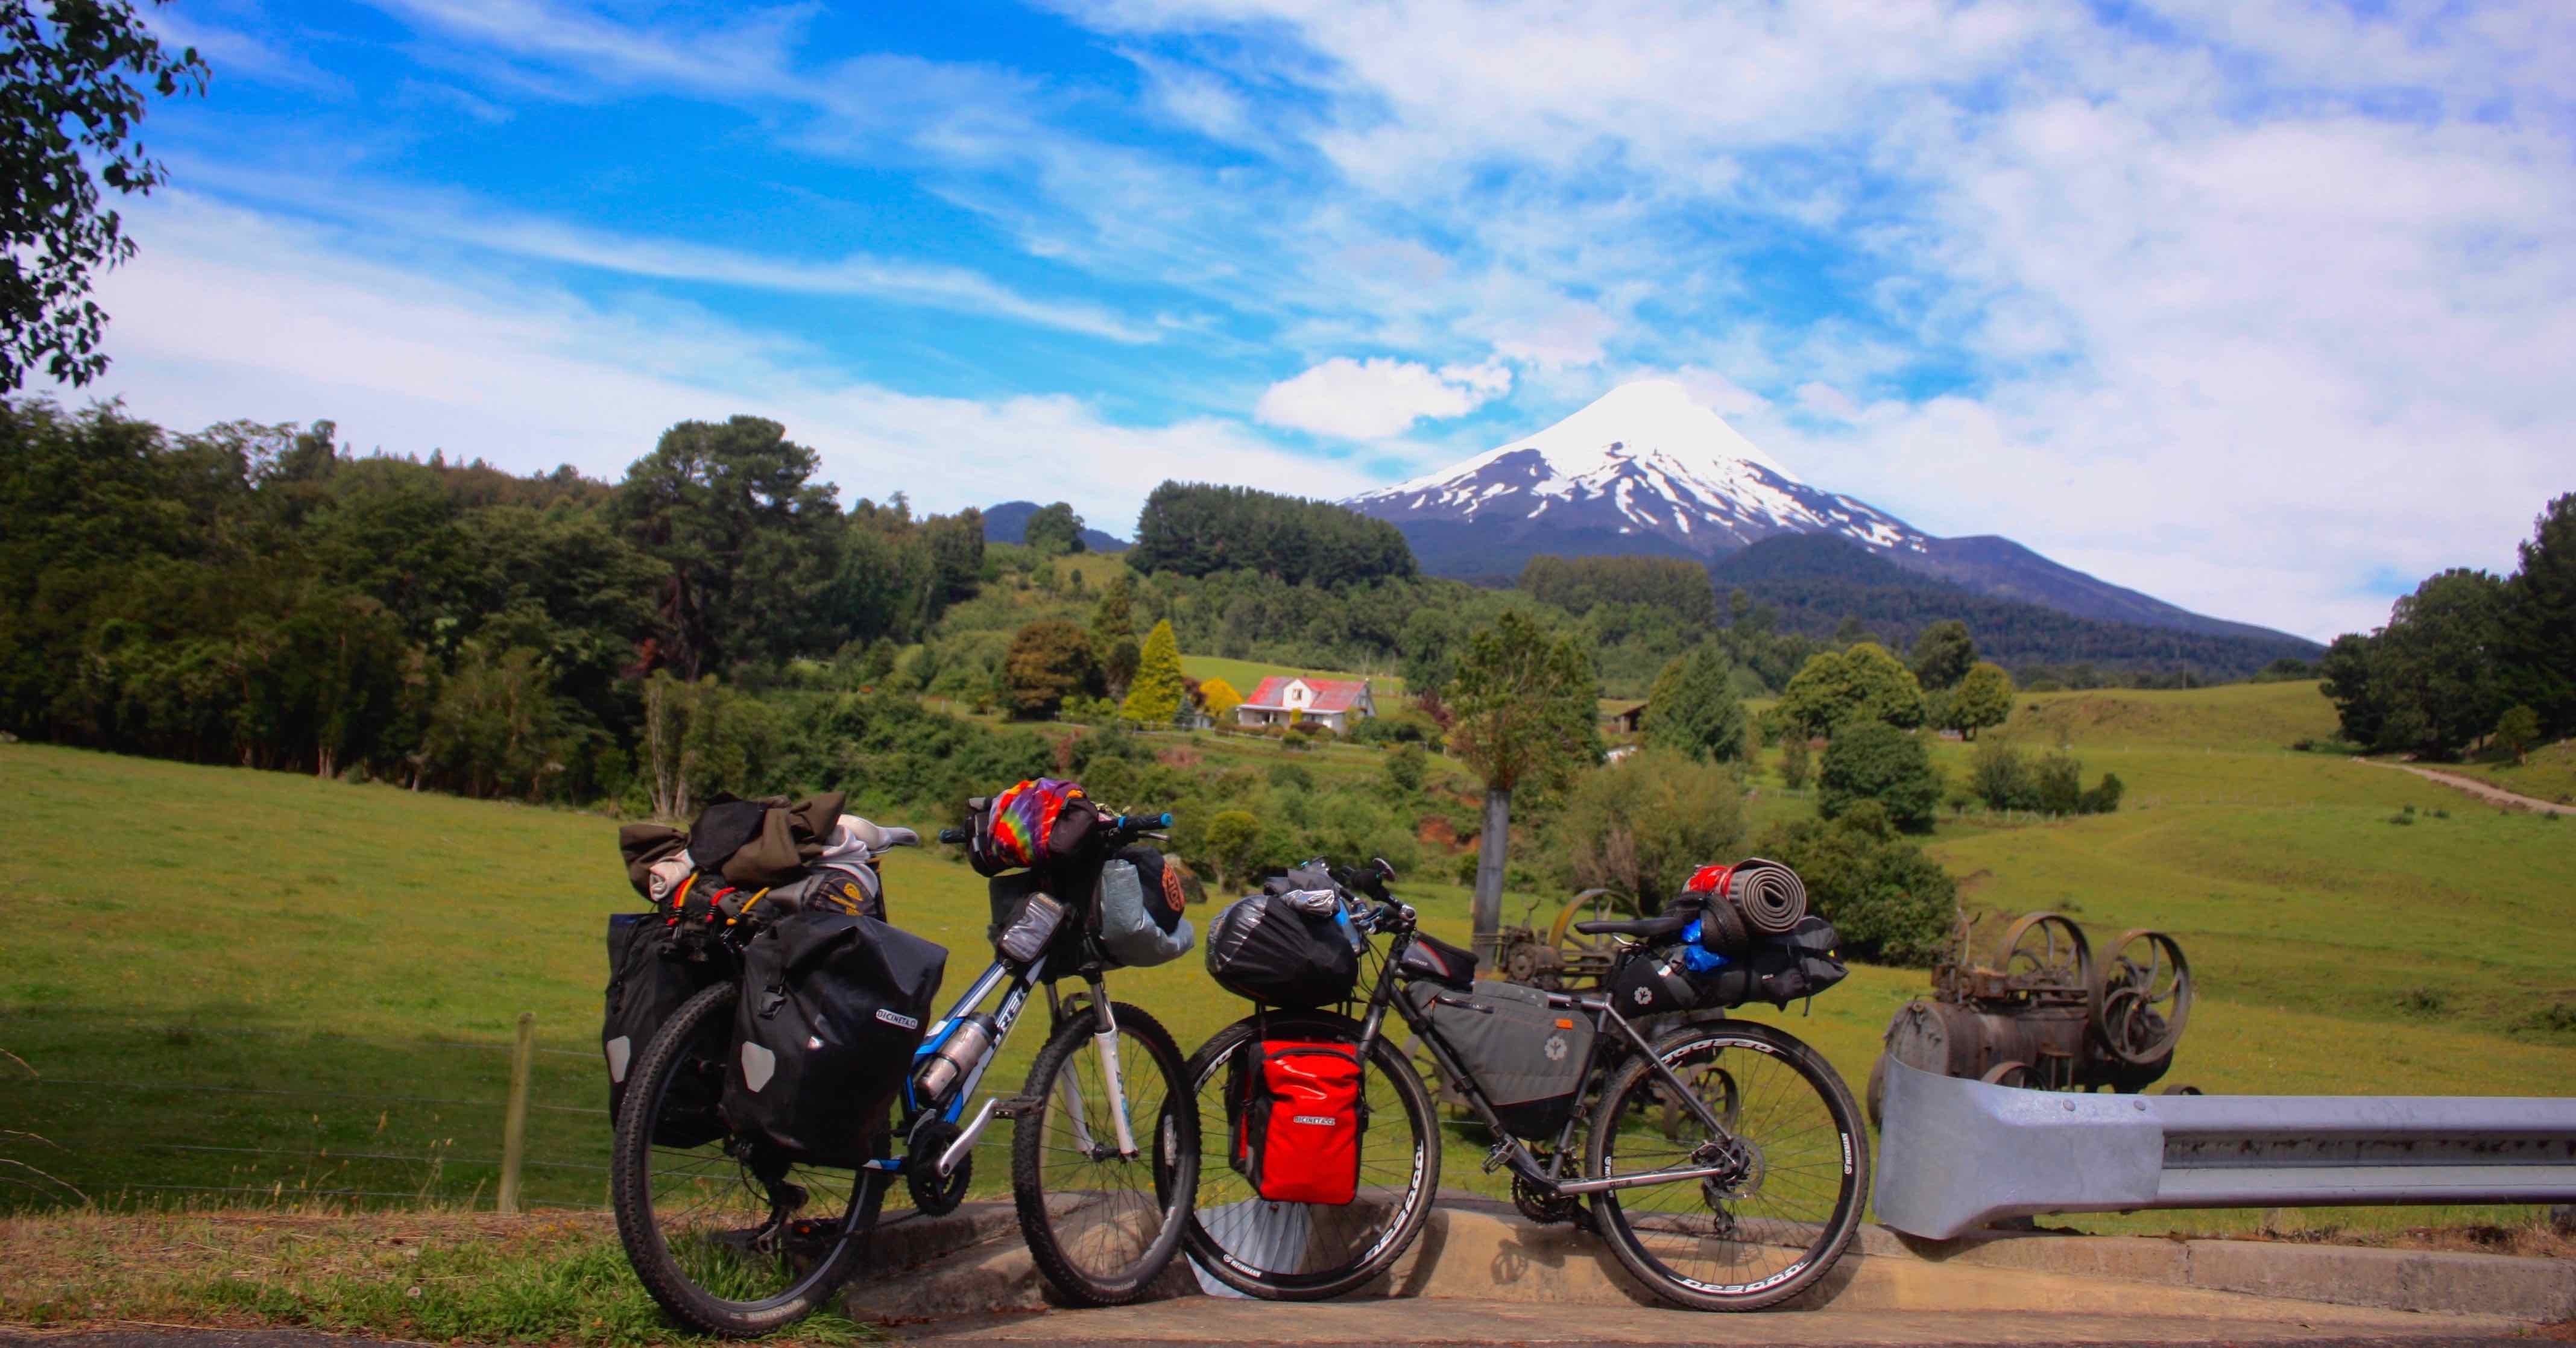 Cicloturismo: para viajar en bicicleta - Bicineta